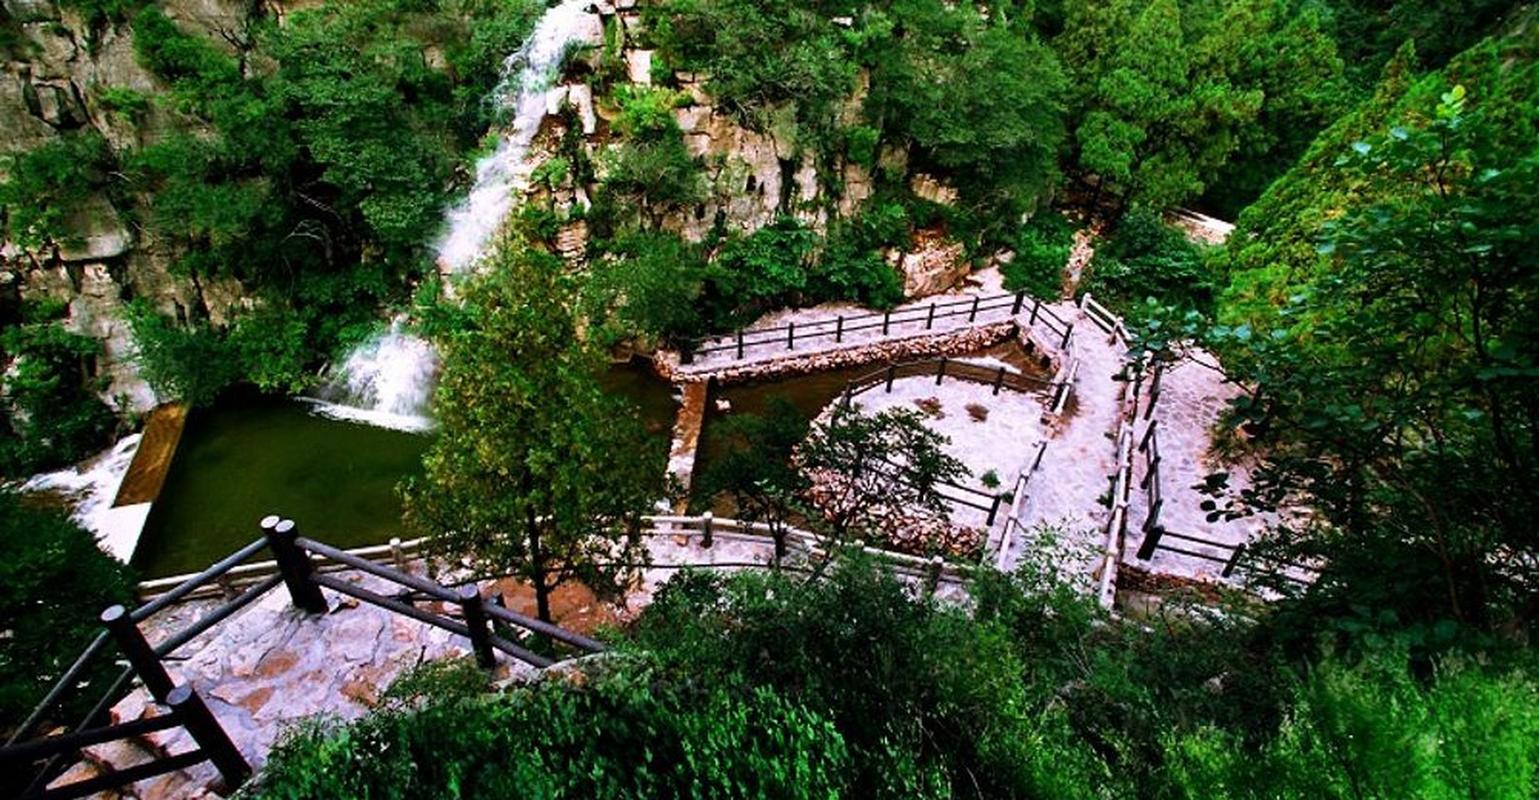 星耀泉城遇见济南#黄金谷山水画廊,一进景区,未见瀑布,便可听到水声